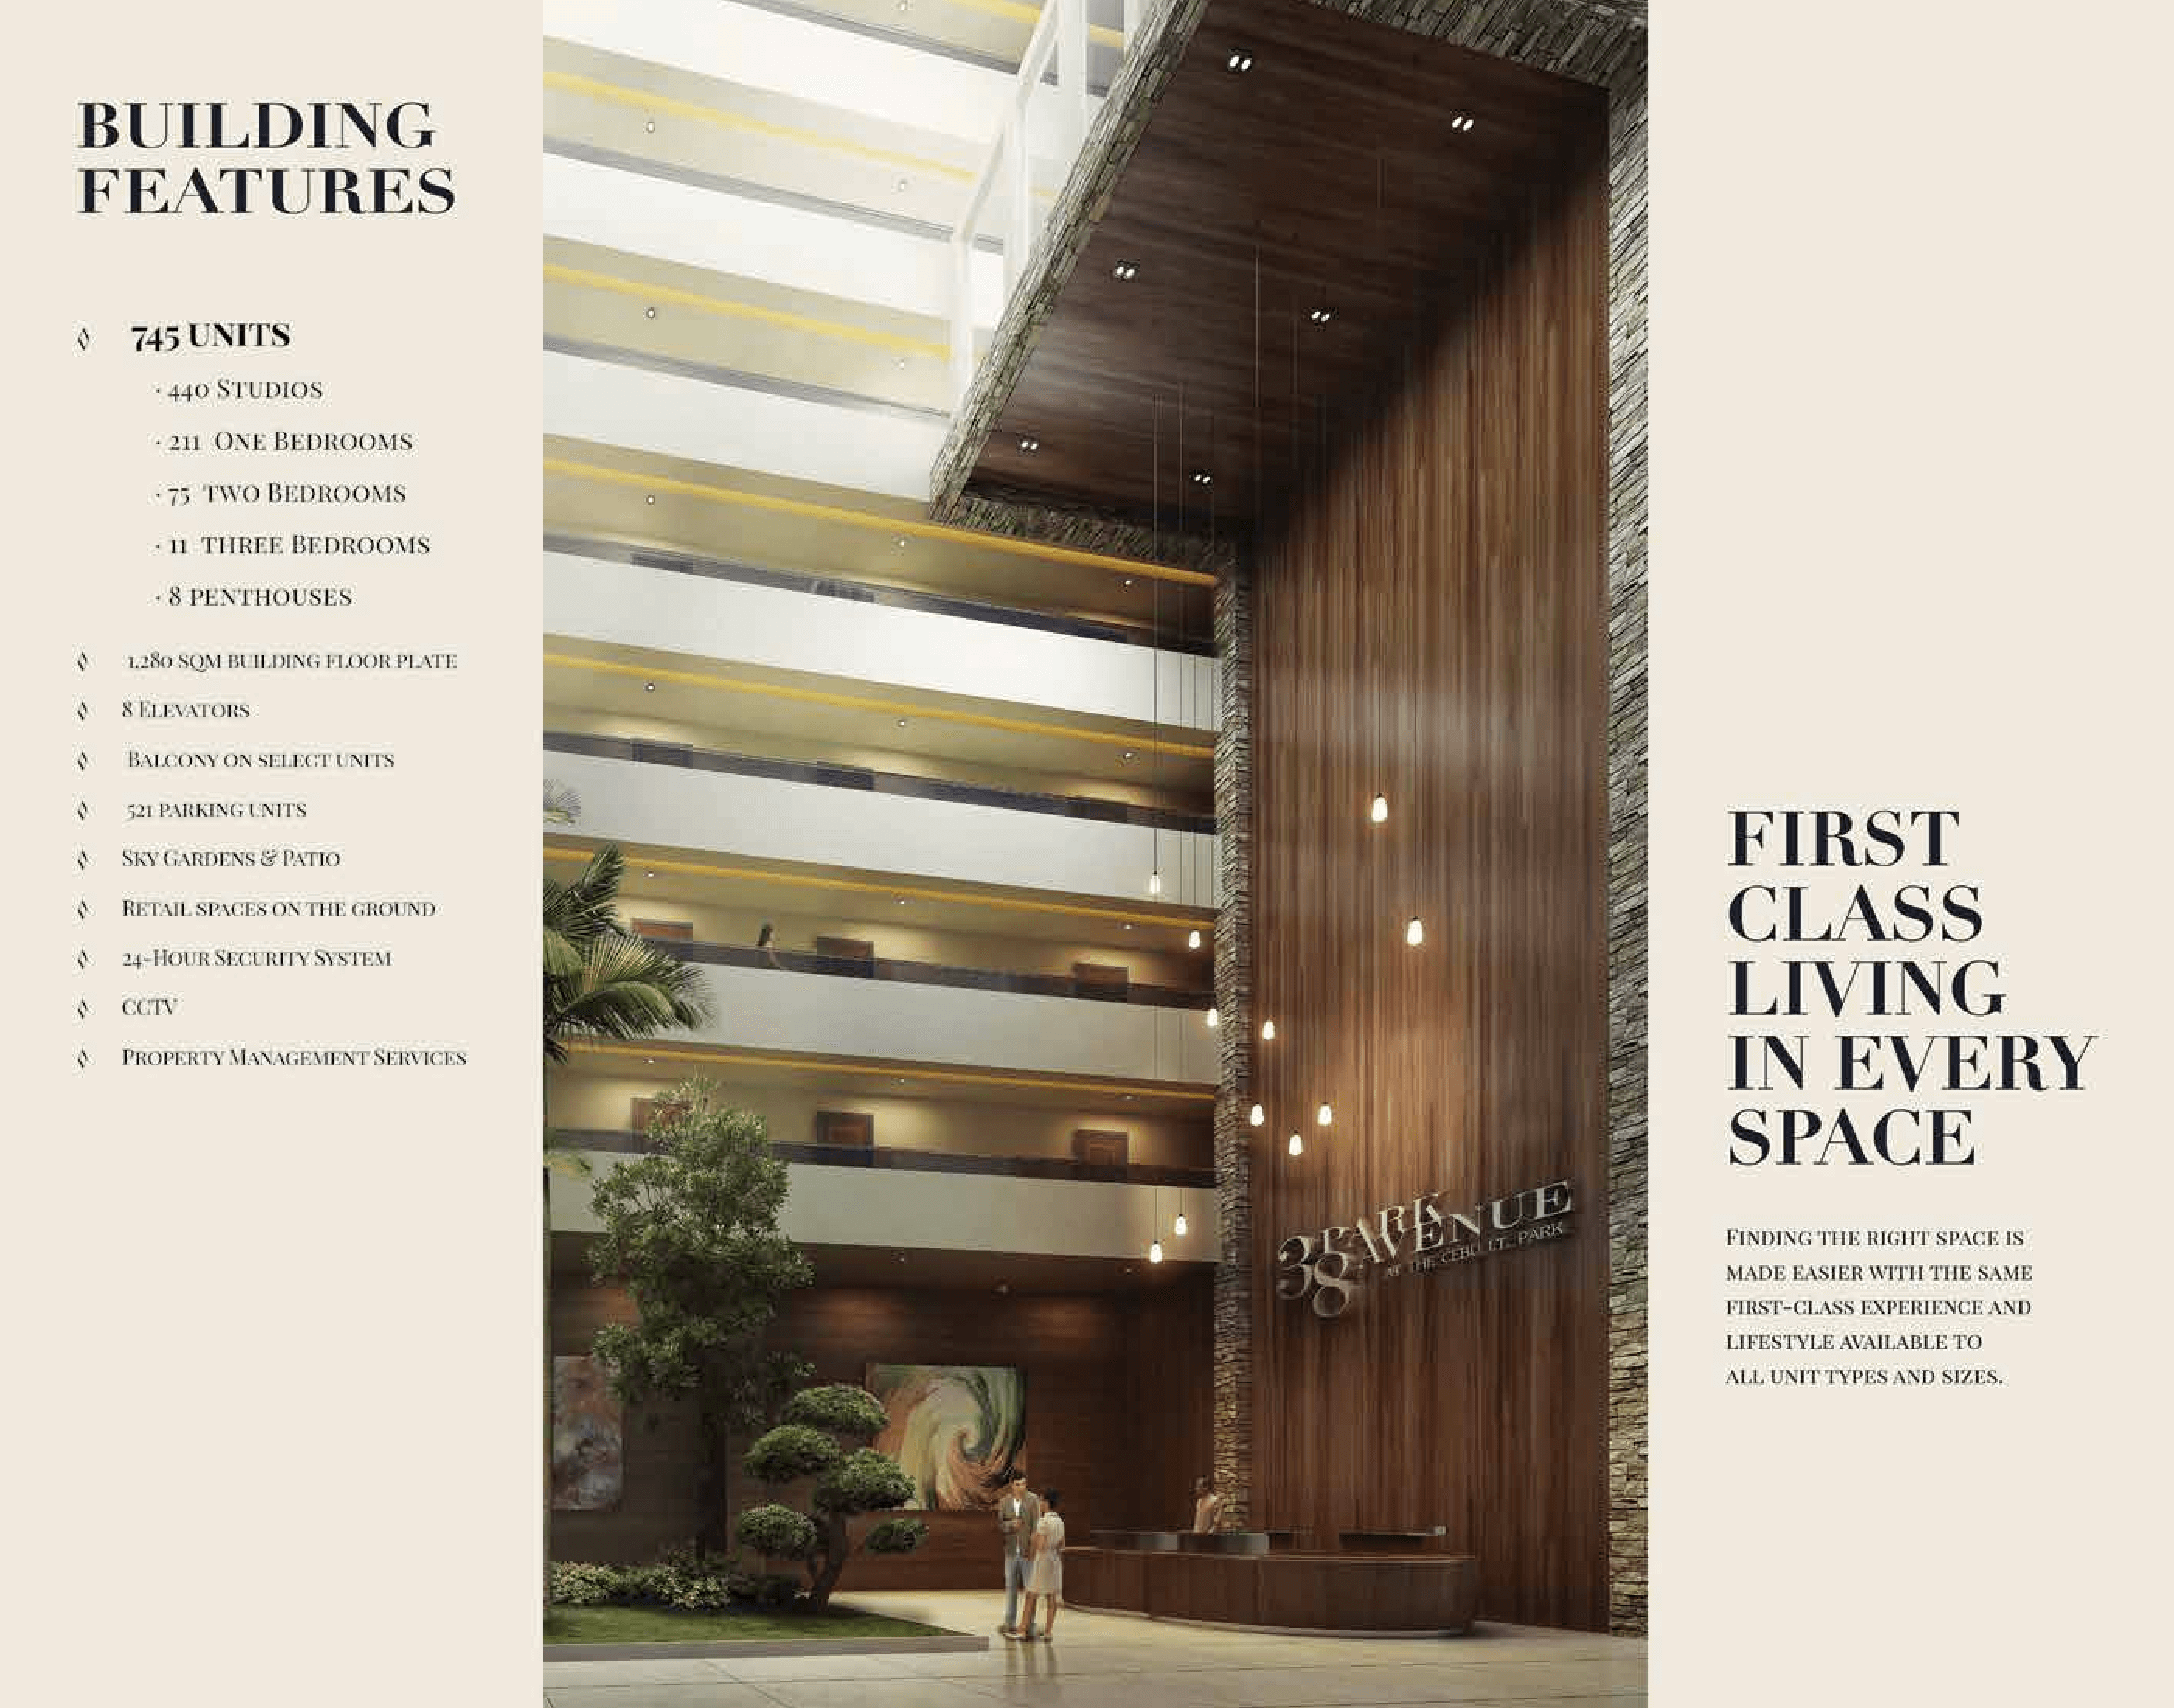 38 Park Avenue condo Cebu building features